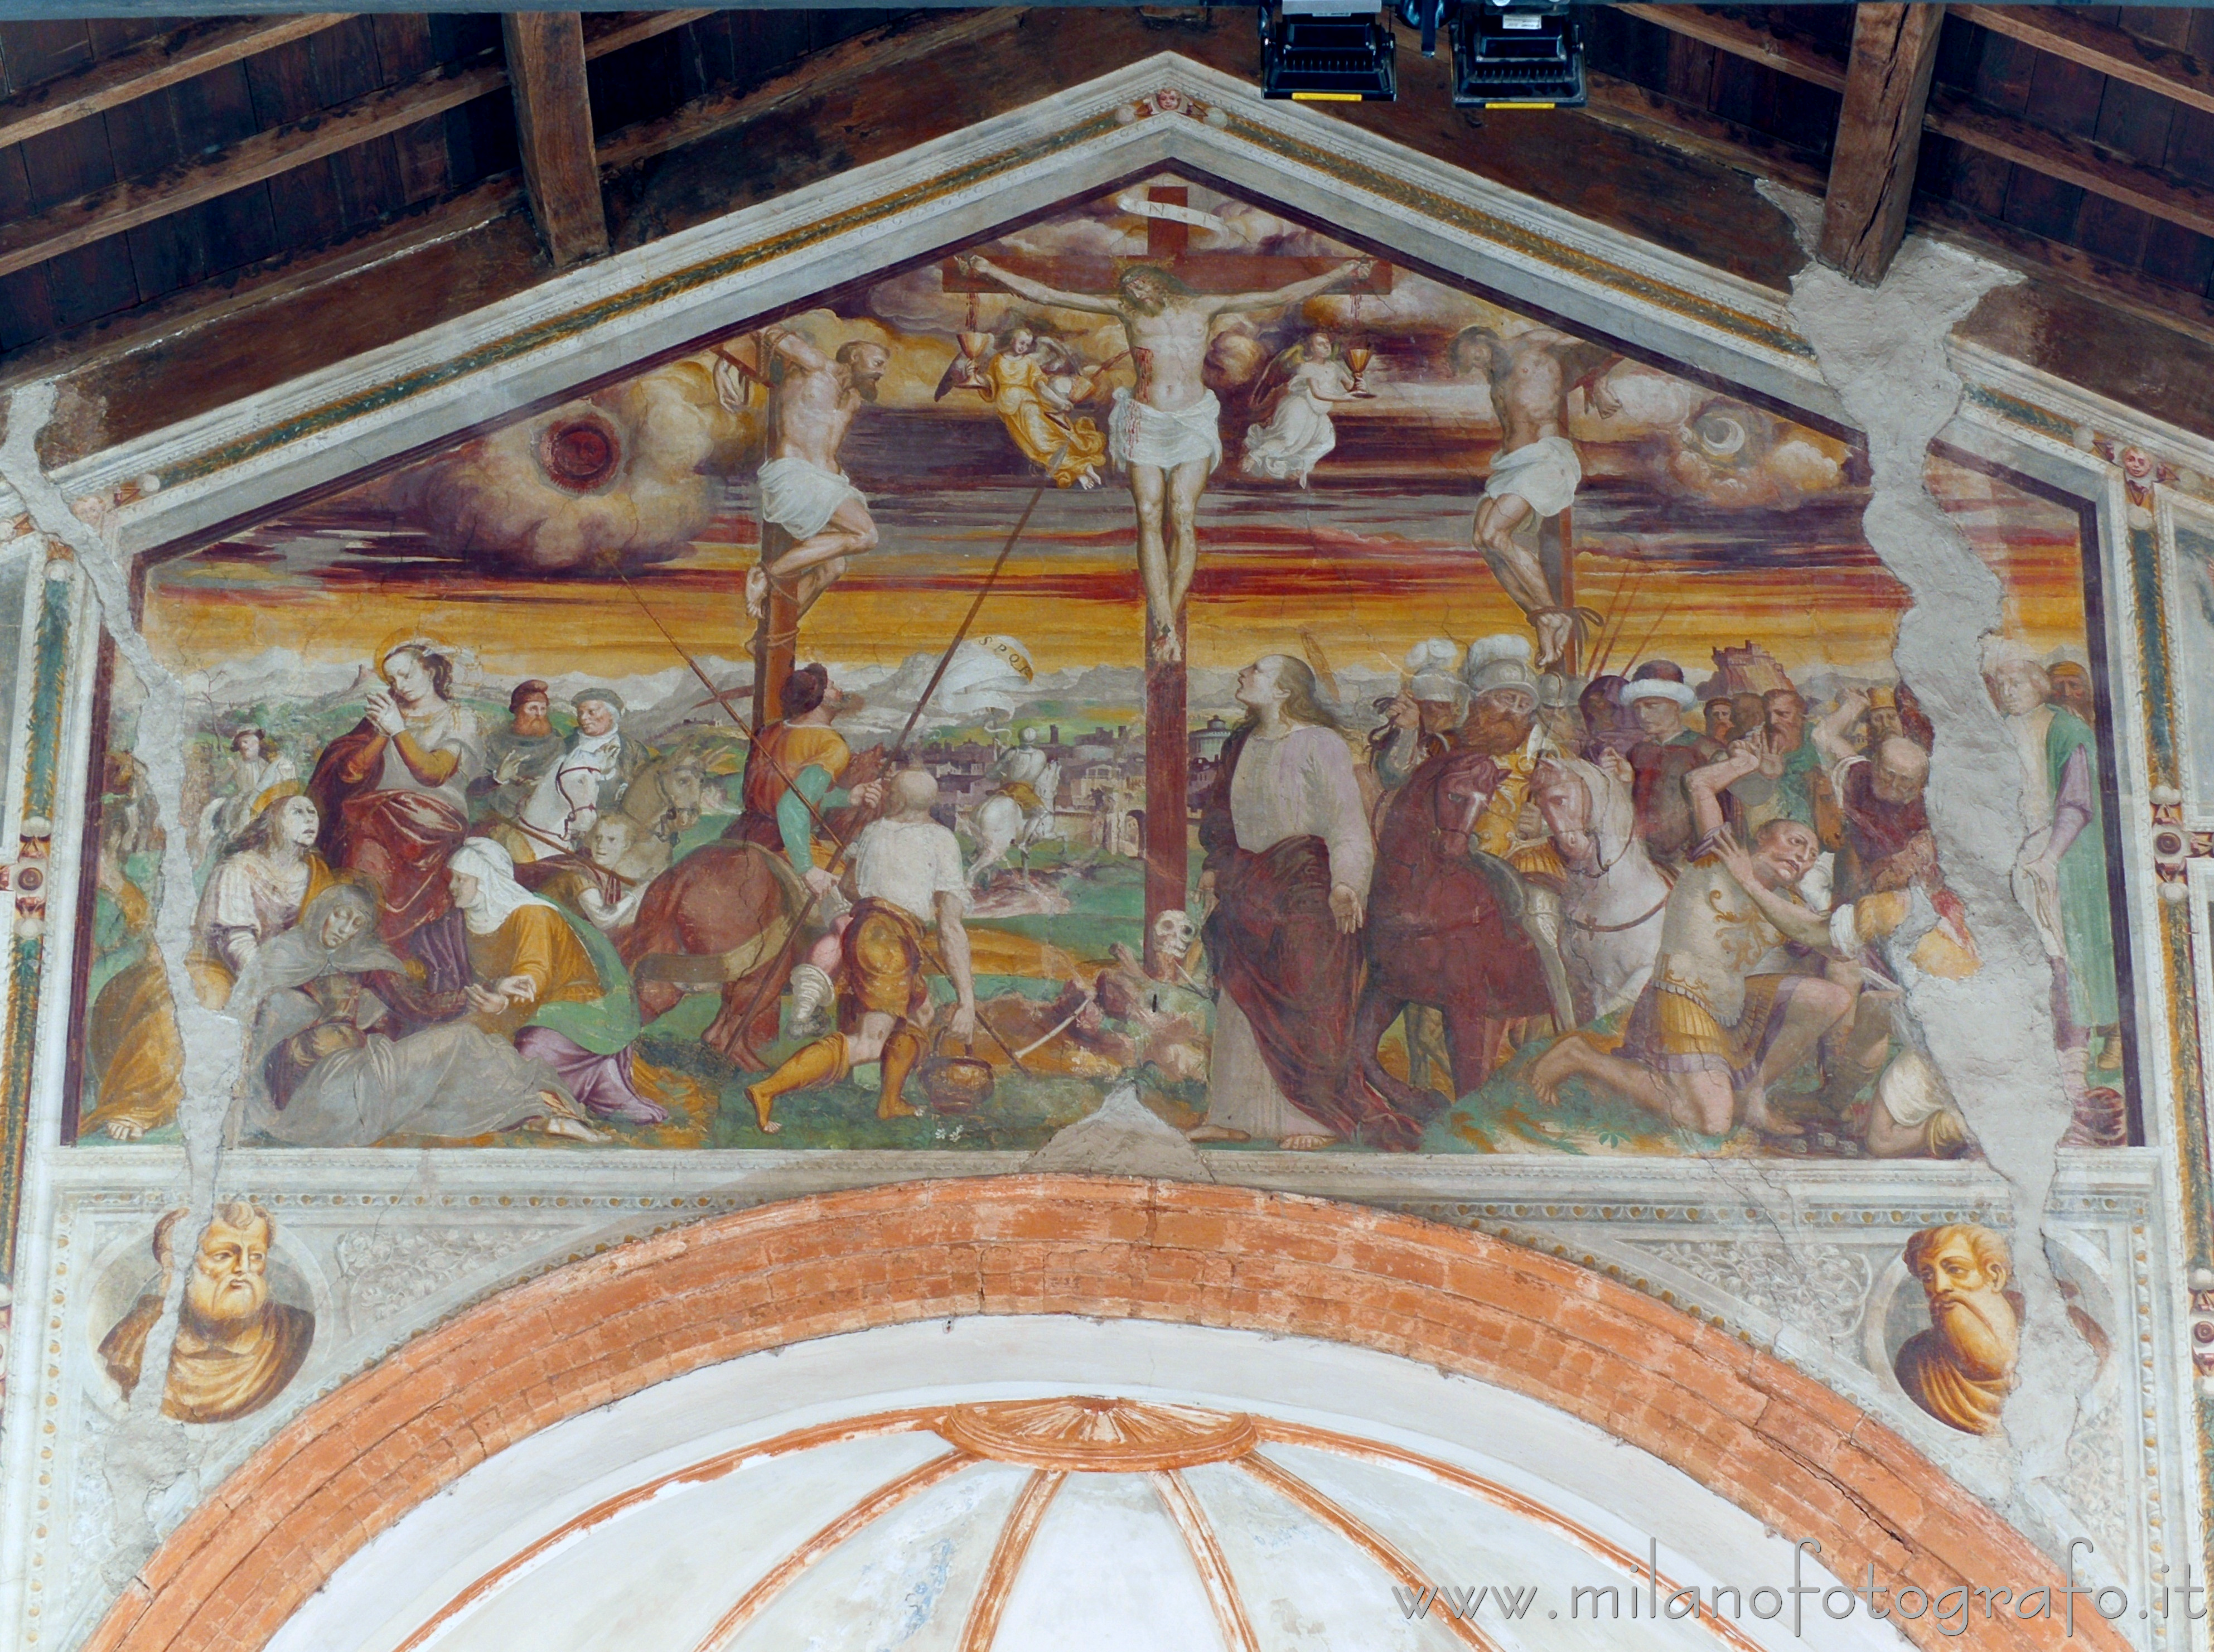 Cavenago di Brianza (Monza e Brianza, Italy): Crucifixion on the great arch of the Church of Santa Maria in Campo - Cavenago di Brianza (Monza e Brianza, Italy)